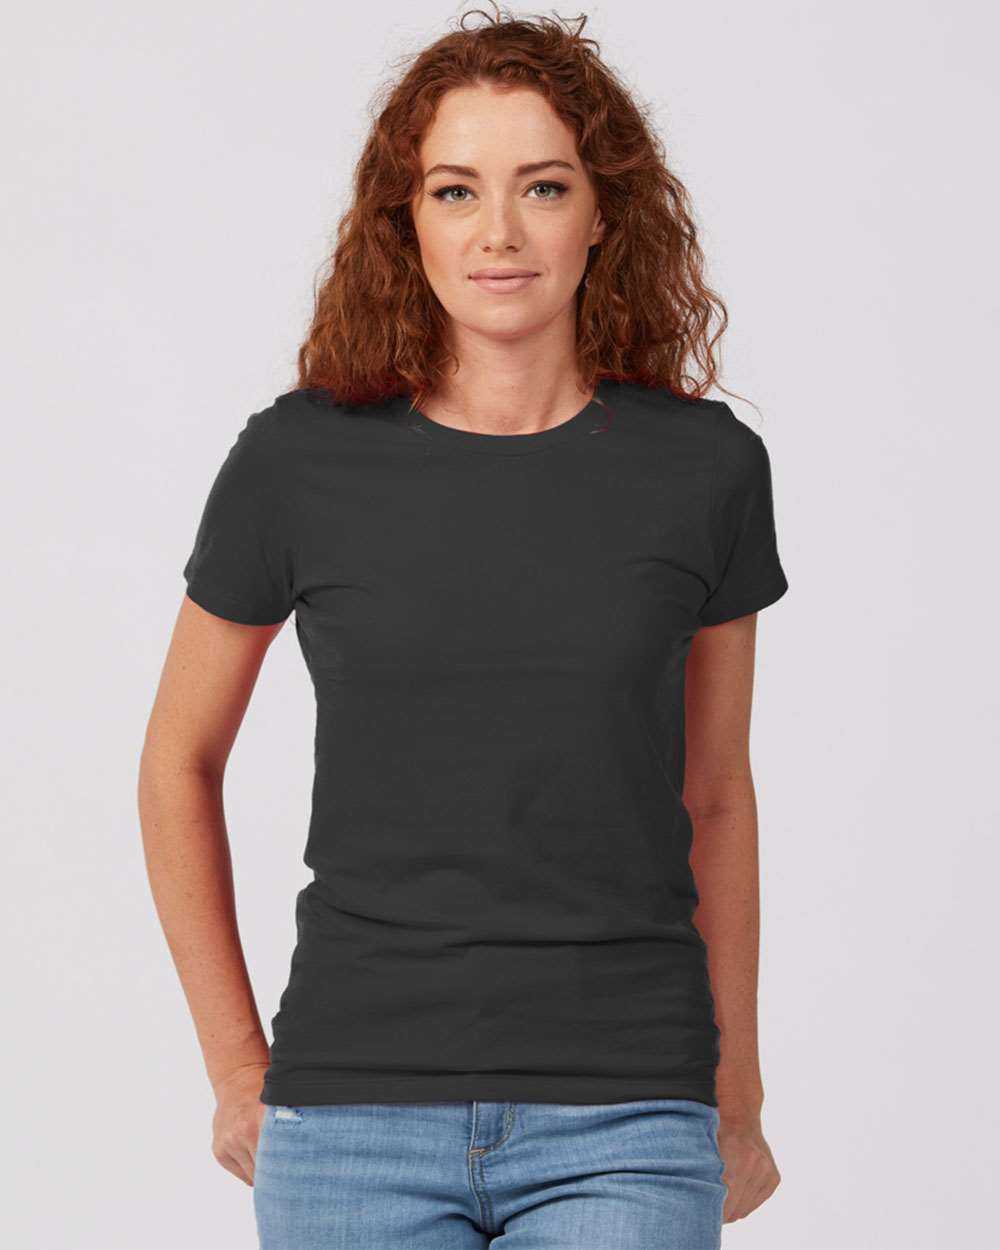 Tultex 516 Women's Premium Cotton T-Shirt - Charcoal - HIT a Double